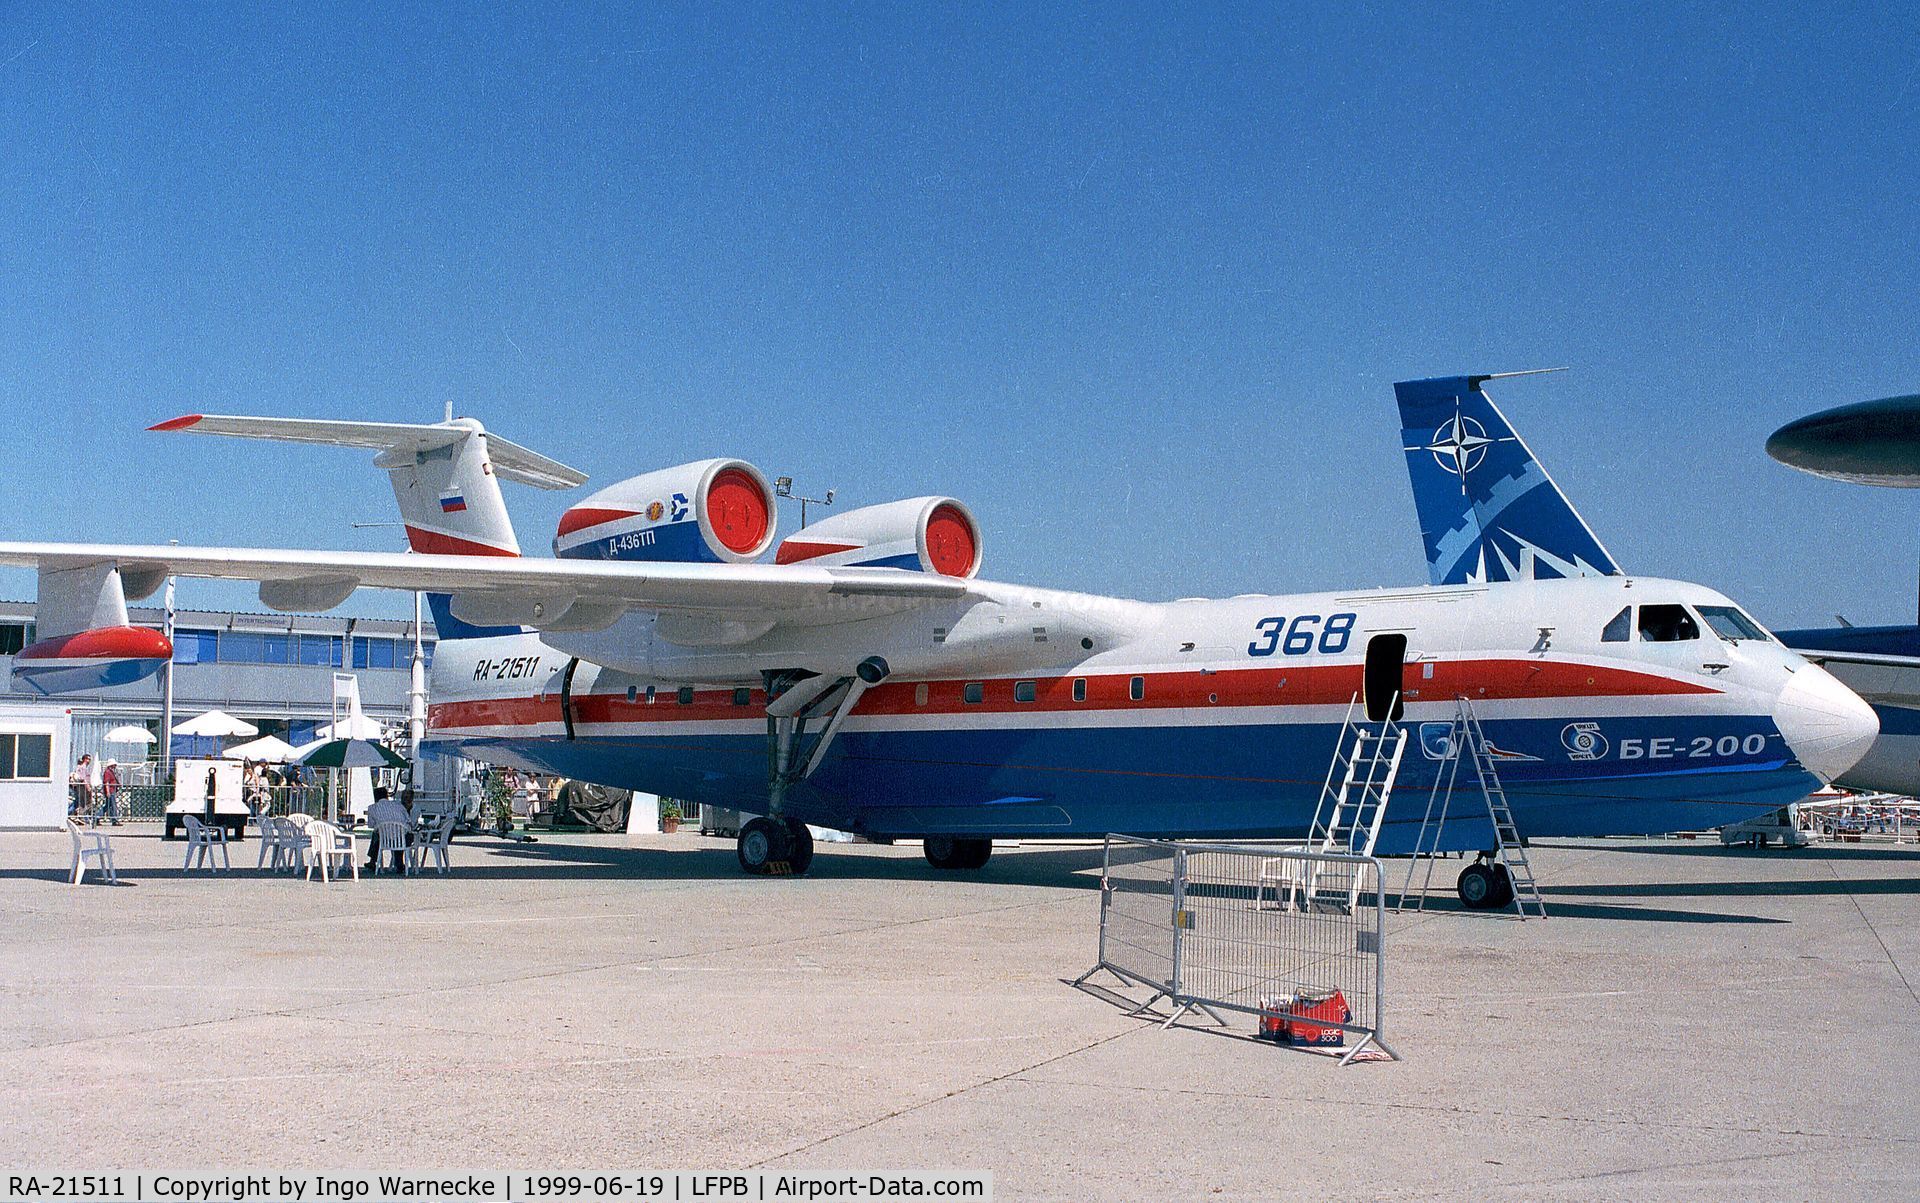 RA-21511, Beriev Be-200 C/N 7682000002, Beriev Be-200 at the Aerosalon 1999, Paris